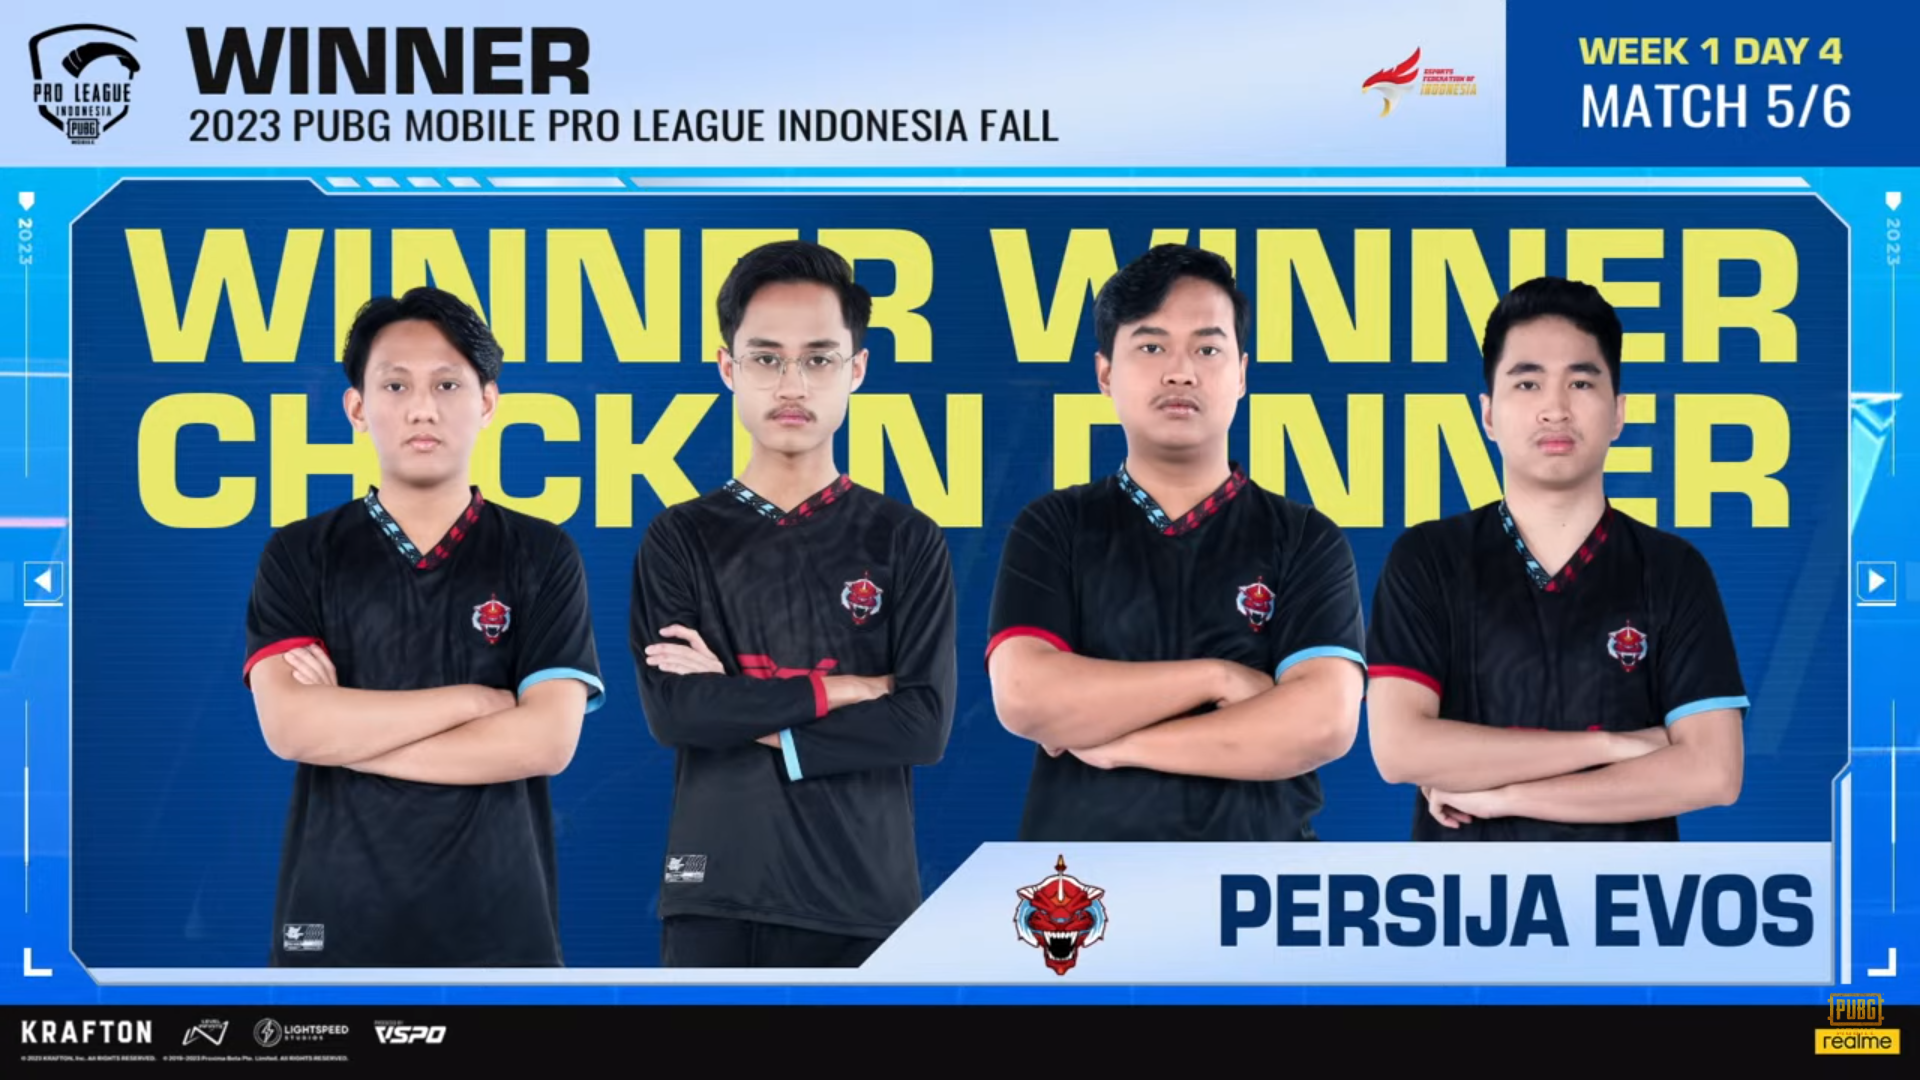 Persija Esports Tampil Konsisten dan Kokoh di Posisi Puncak PMPL Indonesia Fall 2023!